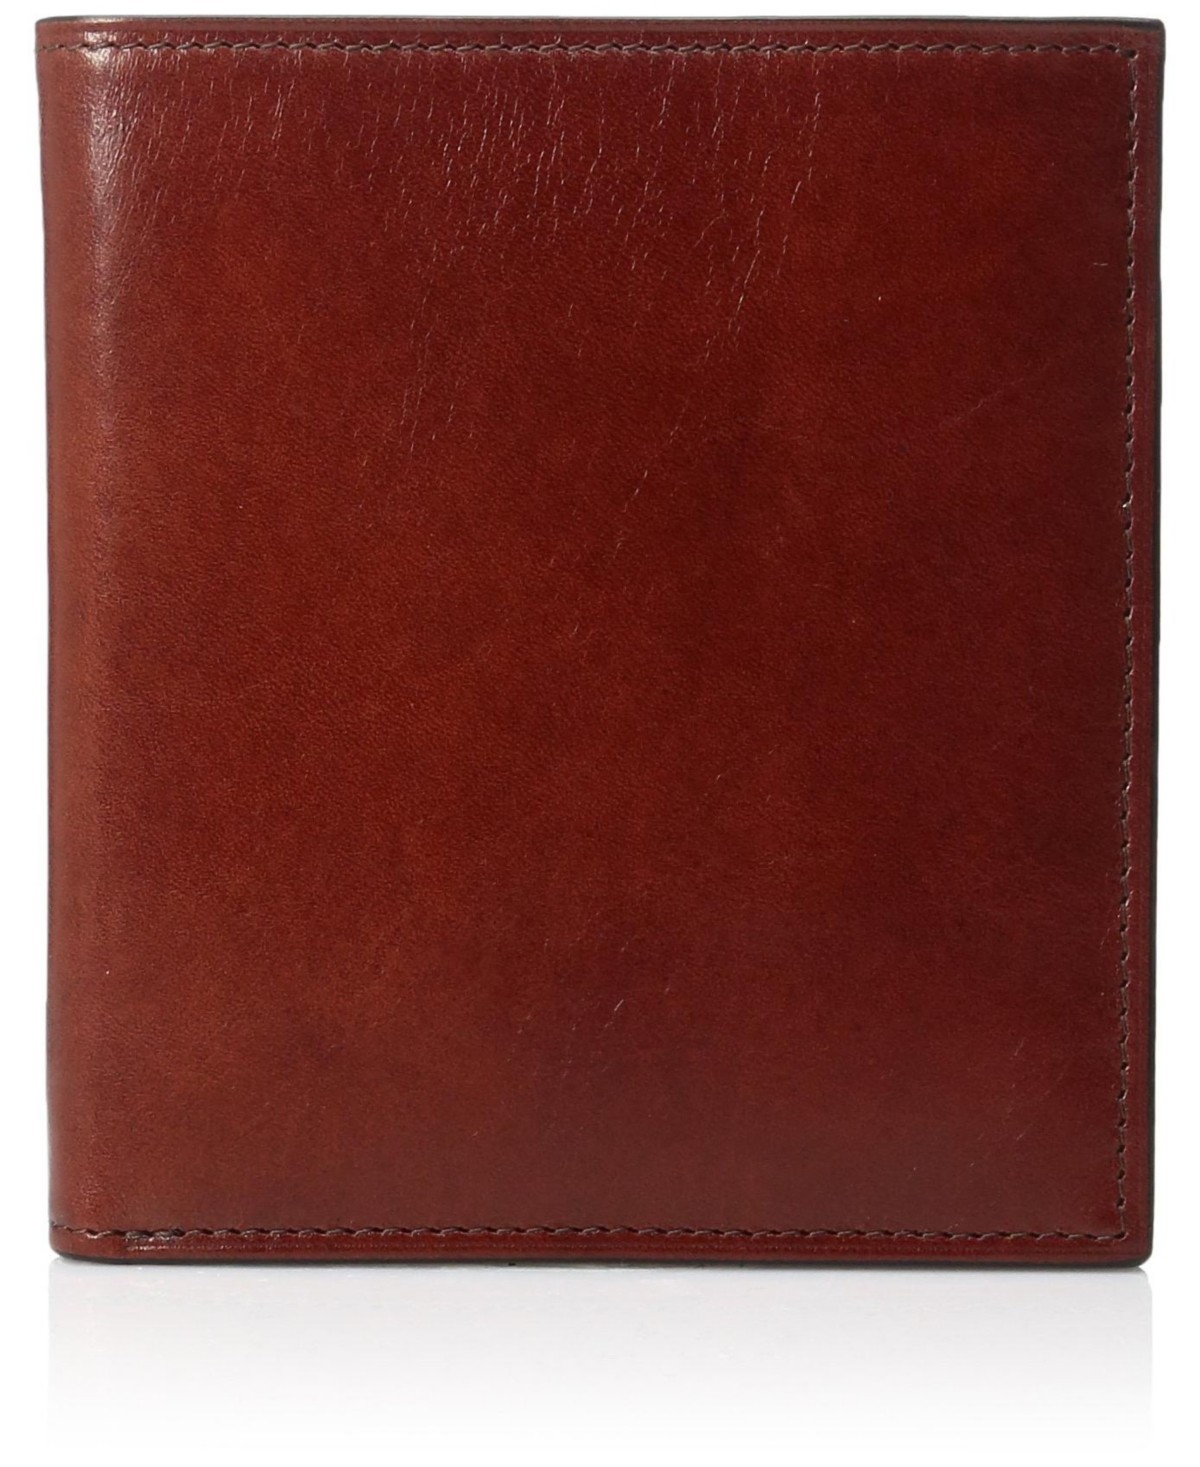 Men's 12 Pocket Credit Italian Leather Wallet - Cognac